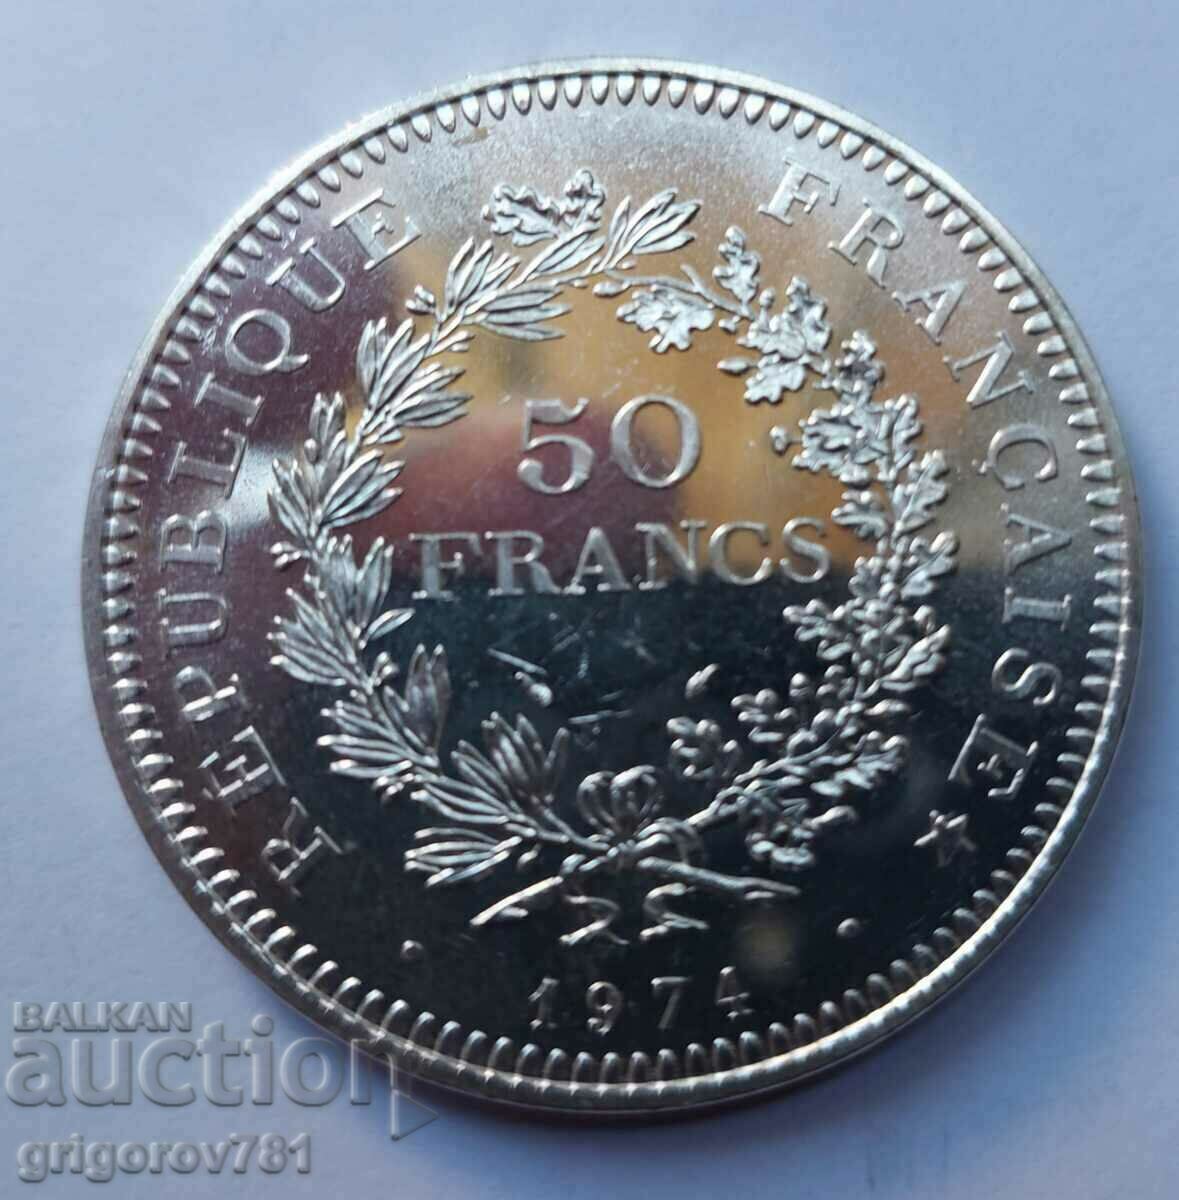 50 Franci Argint Franta 1974 - Moneda de argint #24